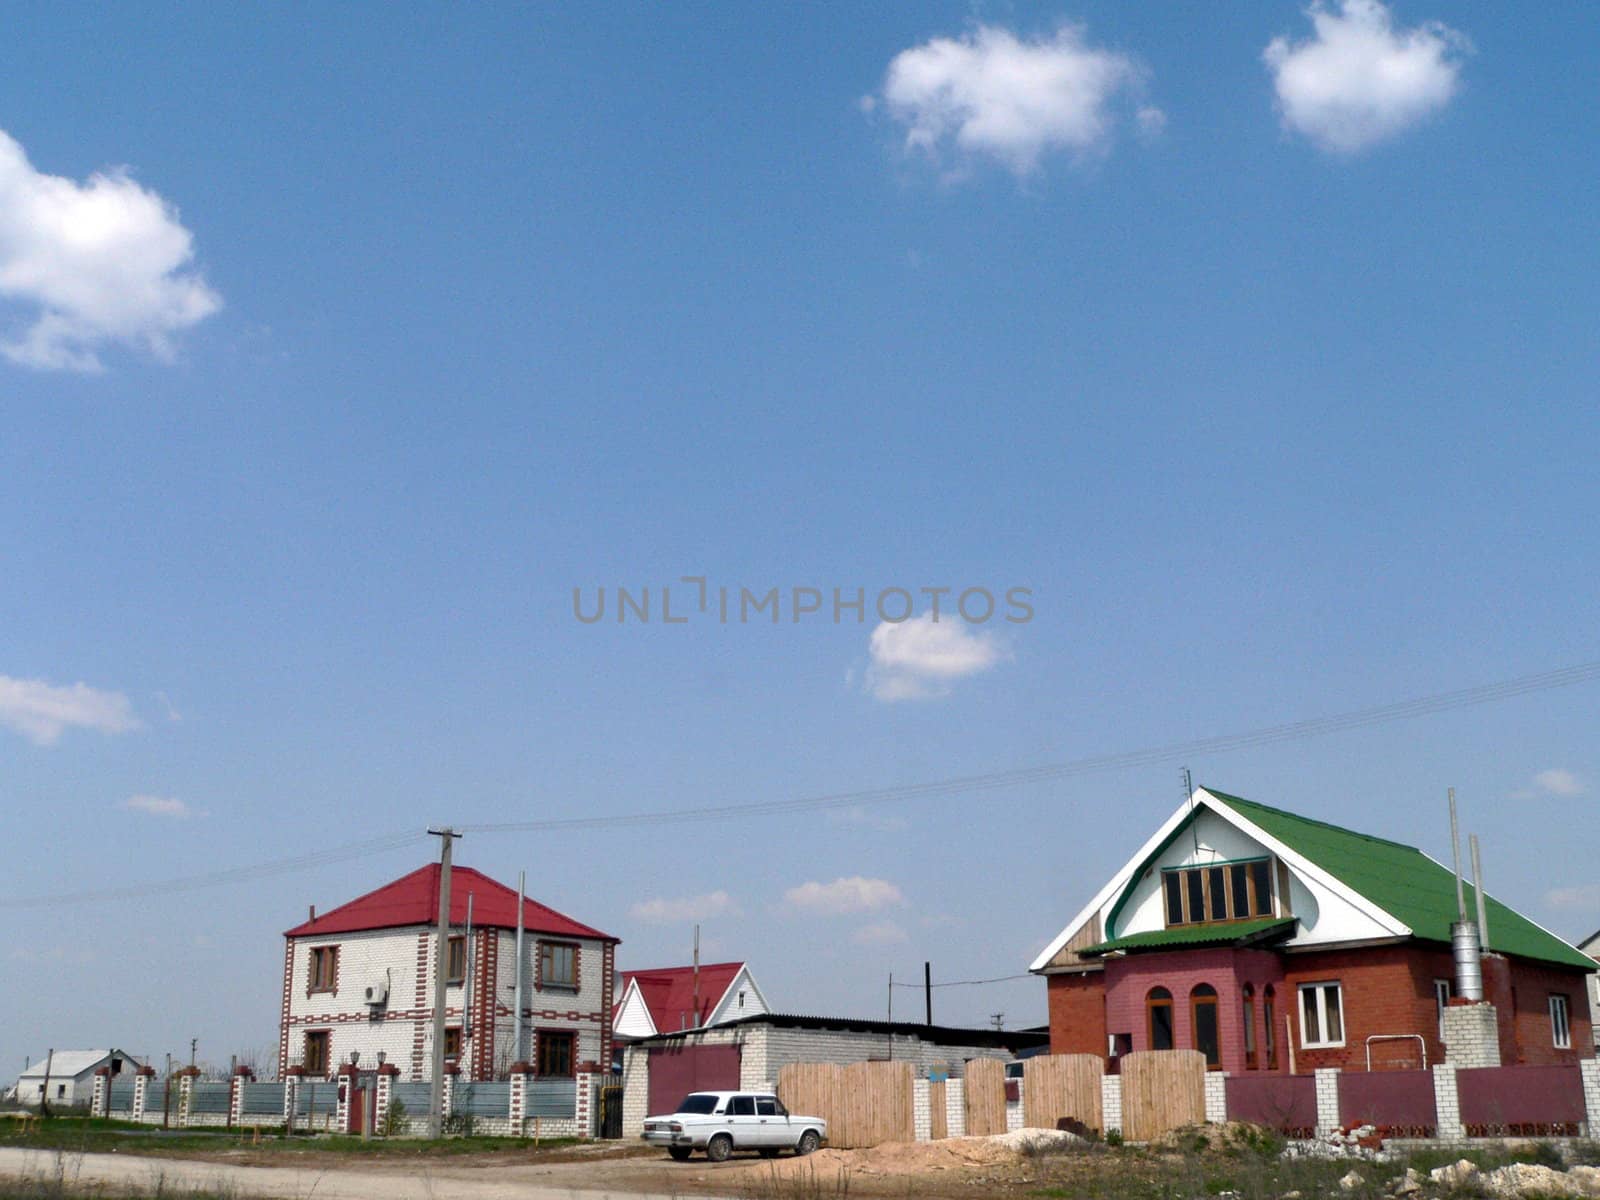 Two houses in rural terrain